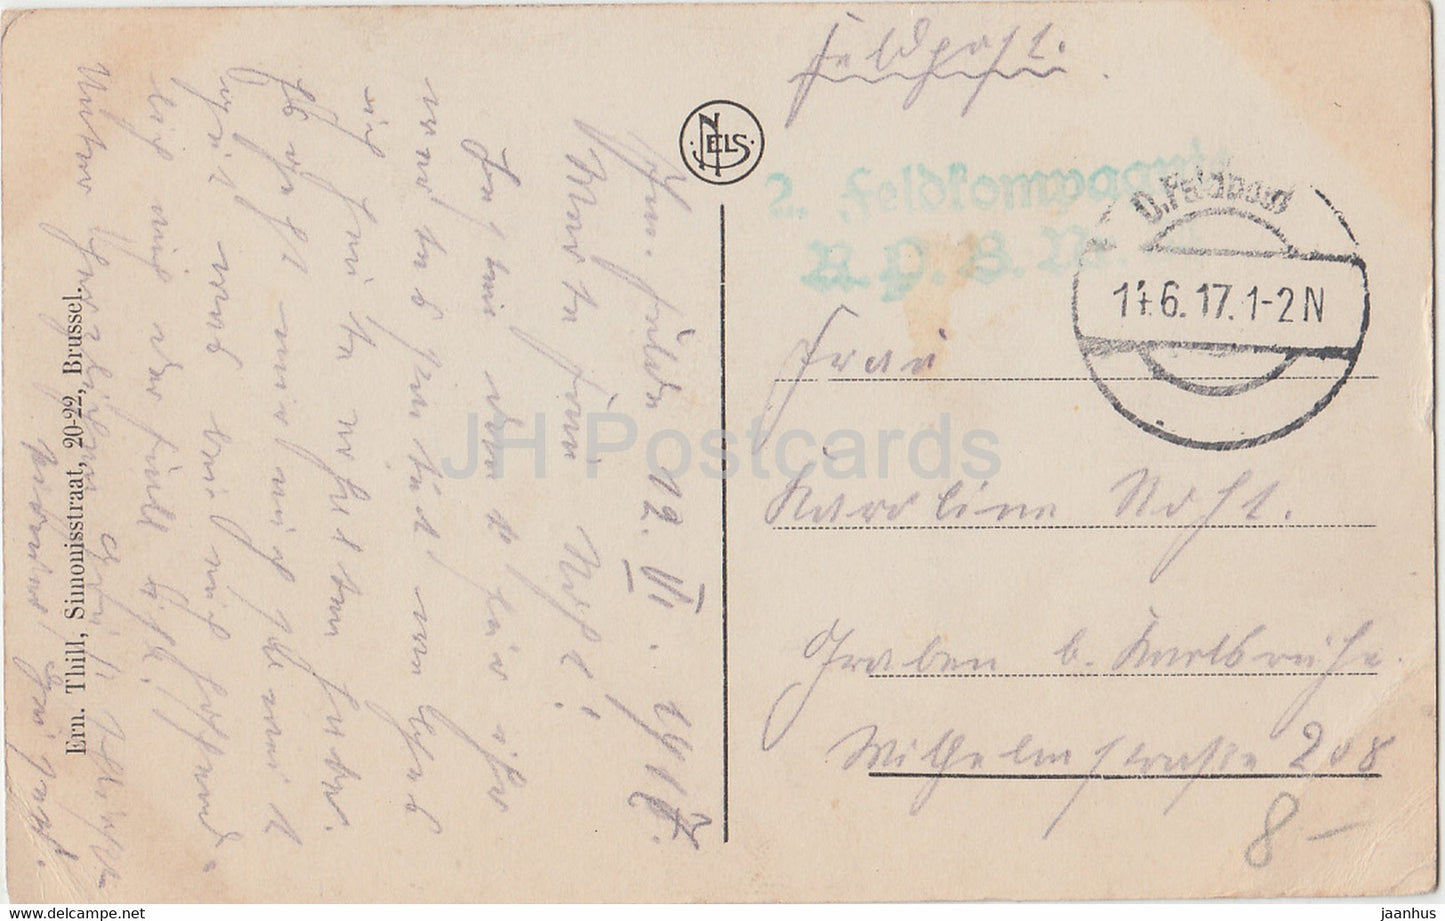 Heyst - Heist - Gedeelte van den Dijk - Feldpost - carte postale ancienne - 1917 - Belgique - utilisé